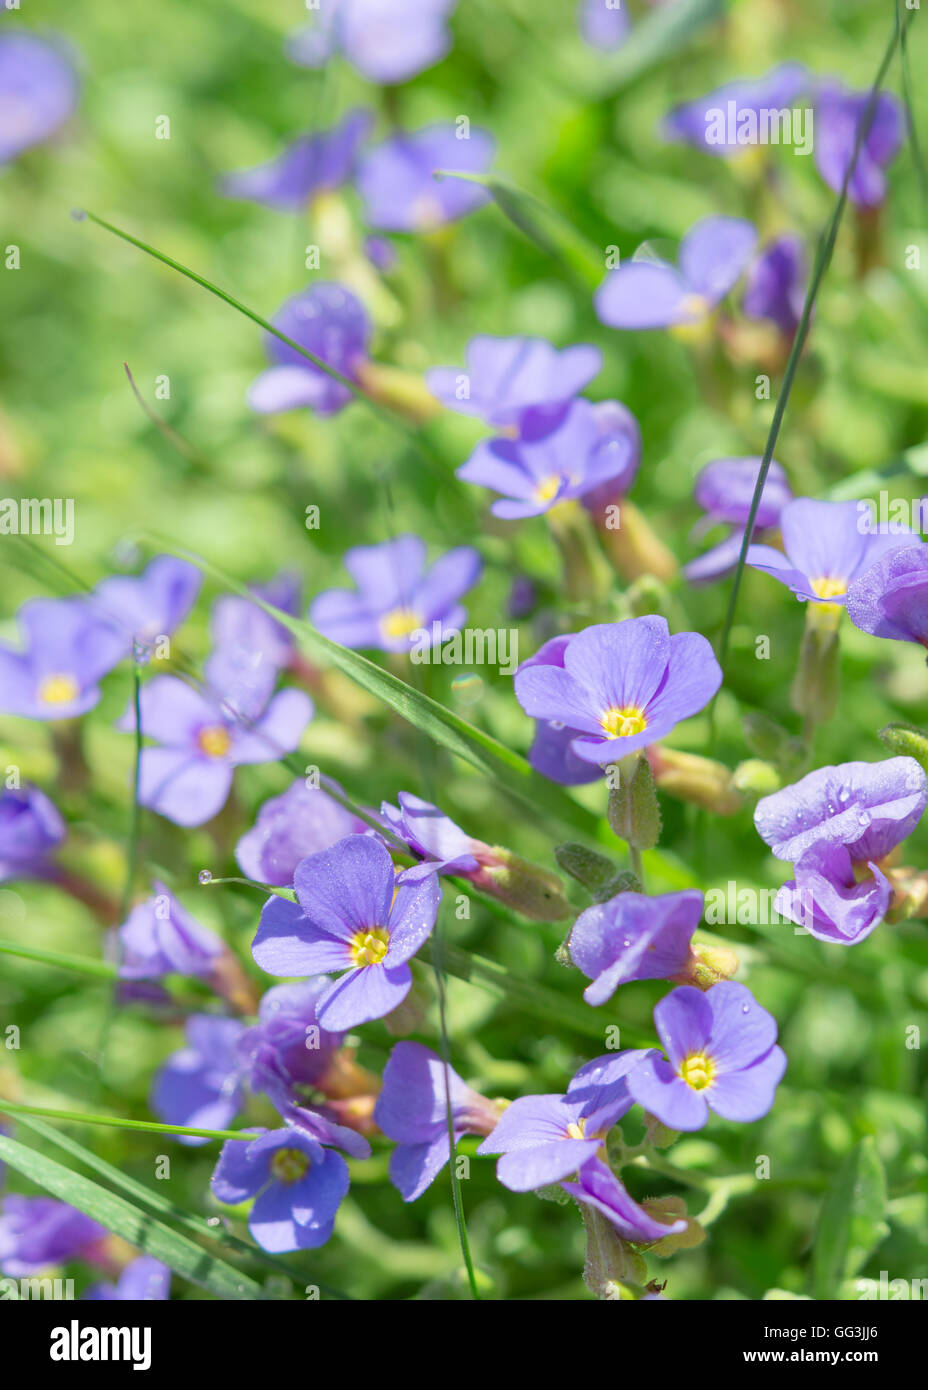 Sommer Blau Blumen frisches Gras auf sonnigen Feld. Vertikale stock Foto mit selektiven Fokus-Punkt und flachen DoF. Stockfoto